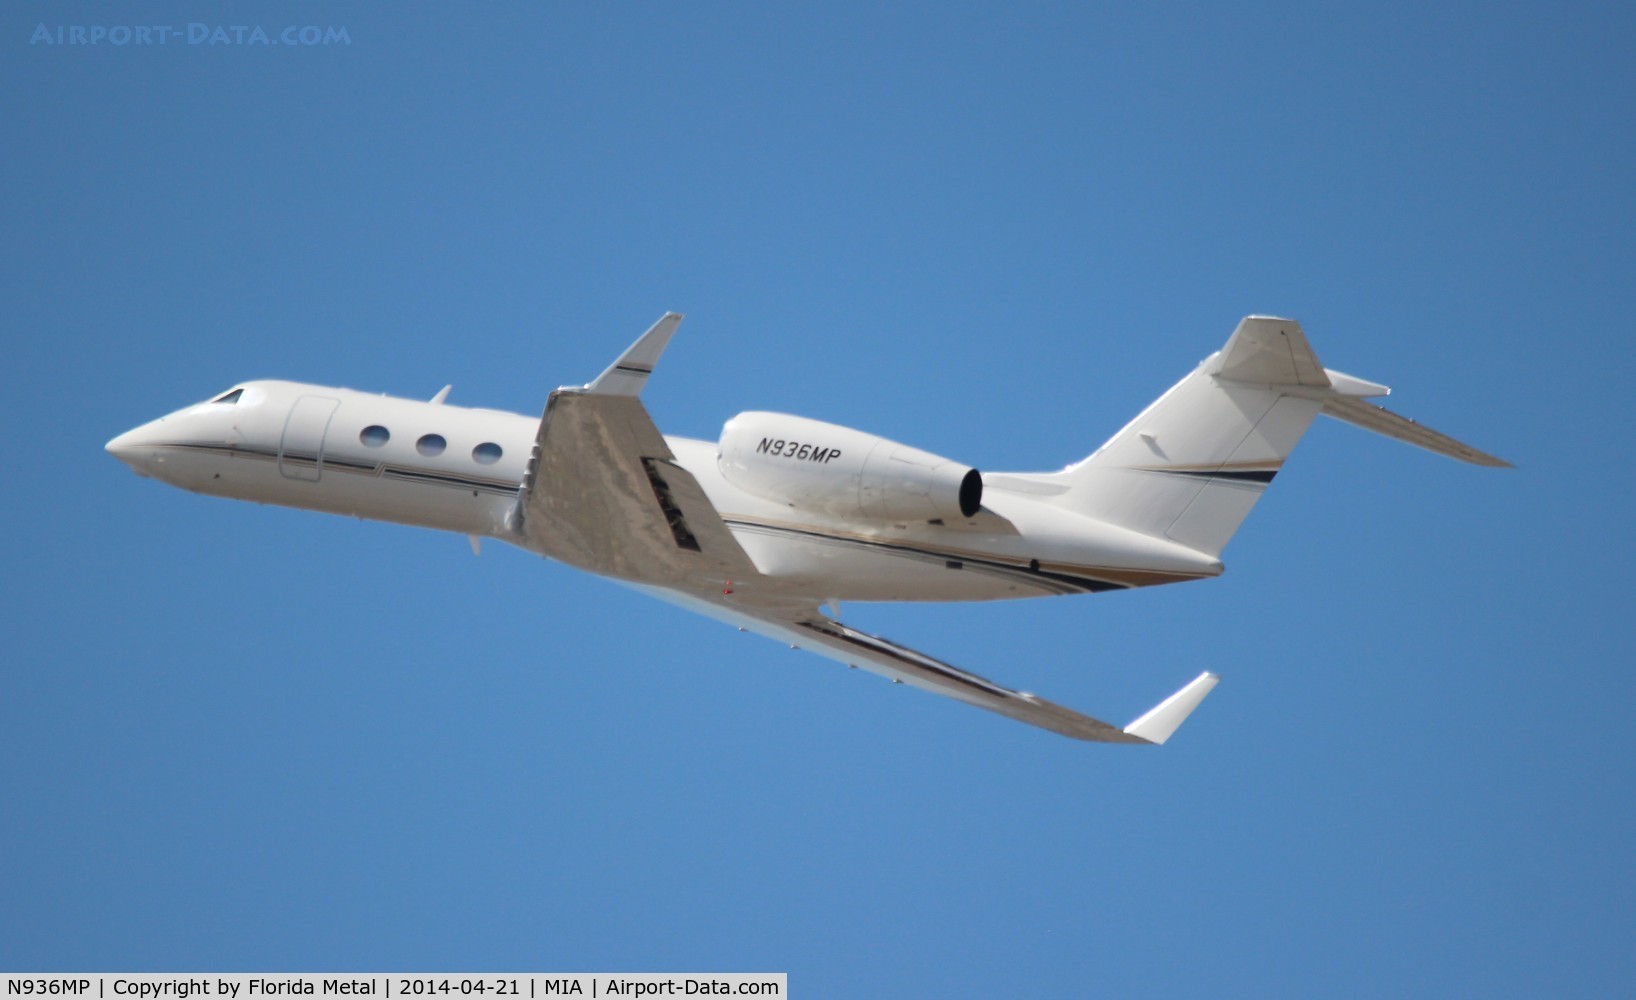 N936MP, 2009 Gulfstream Aerospace GIV-X (G450) C/N 4173, Gulfstream G450